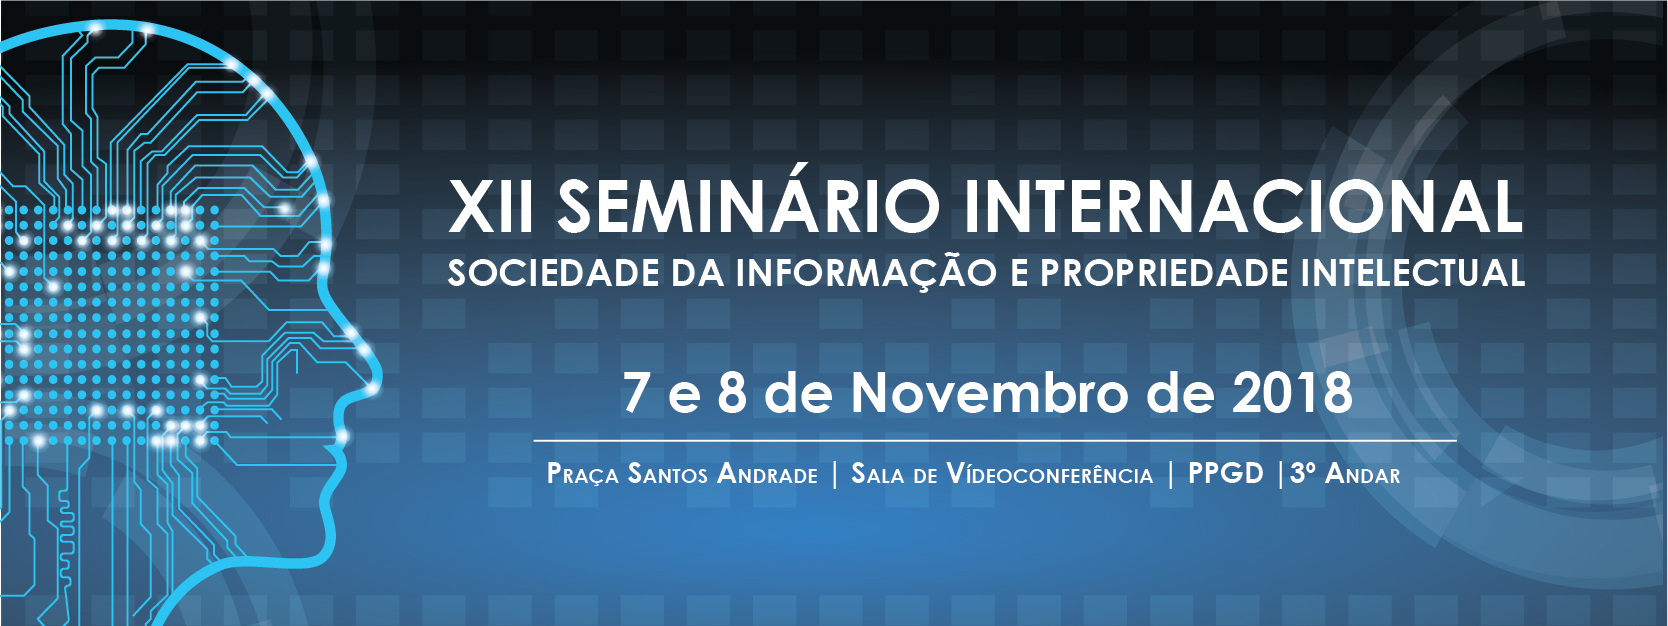 XII Seminário Internacional – Sociedade da Informação e Propriedade Intelectual